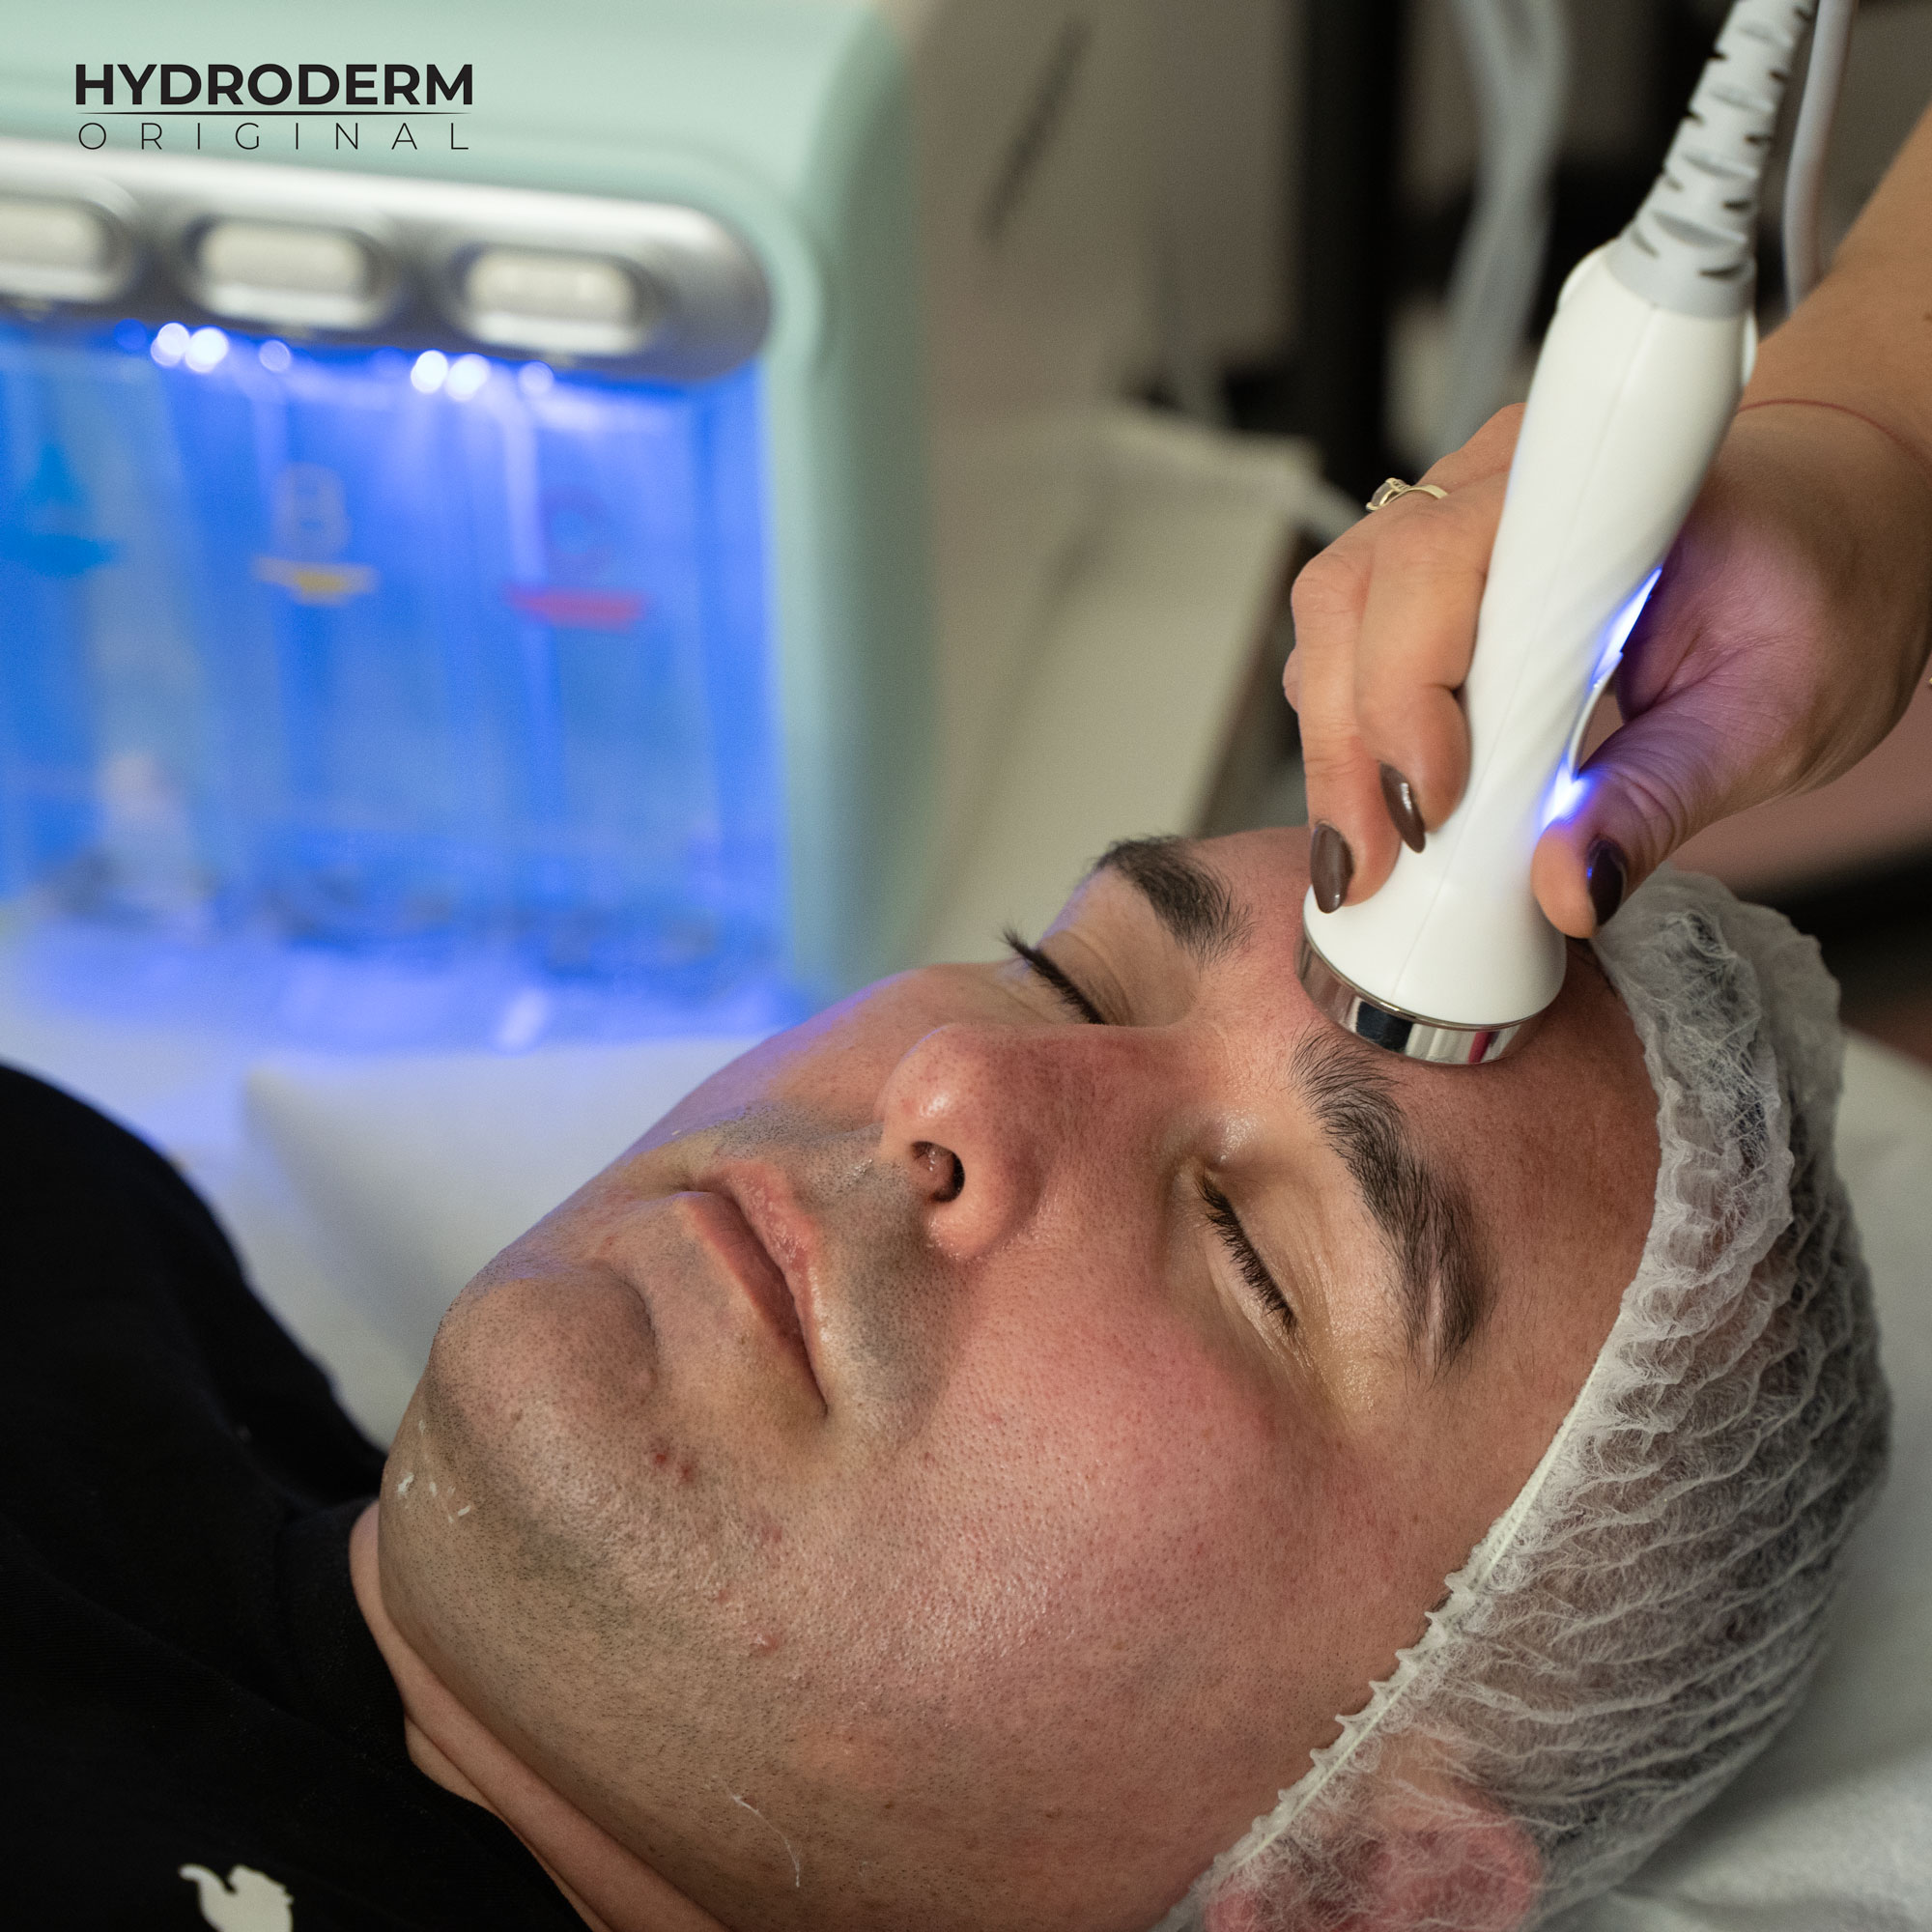 Etap mezoterapii bezigłowej stosuje fale ultradźwiękowe, by wprowadzić składniki aktywne zawarte w kosmetykach